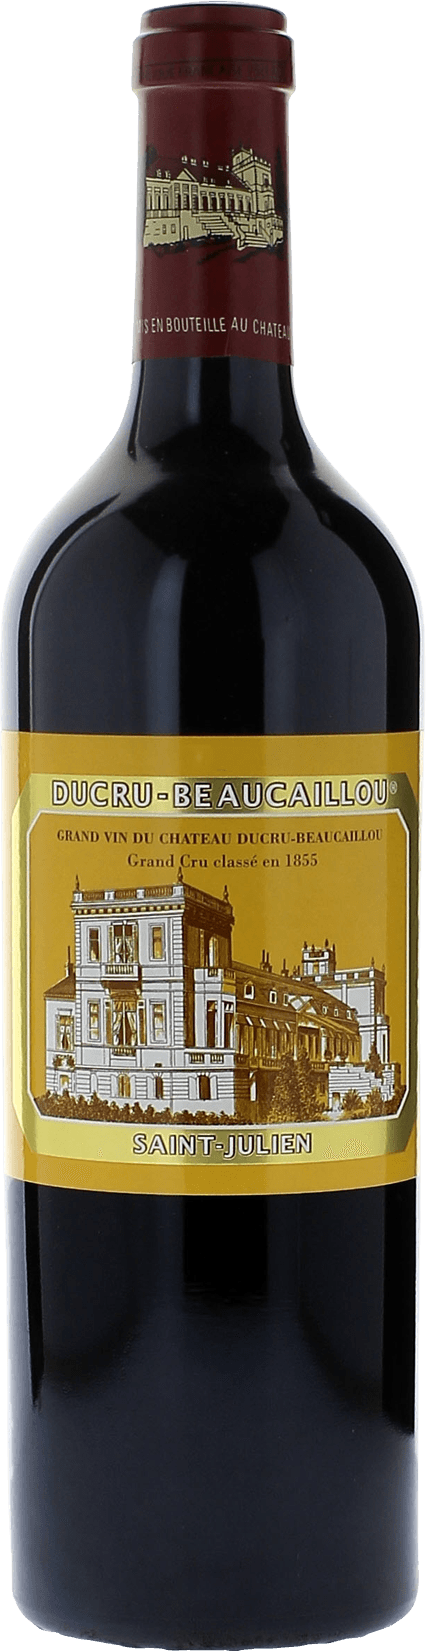 Ducru beaucaillou 1995 2me Grand cru class Saint-Julien, Bordeaux rouge